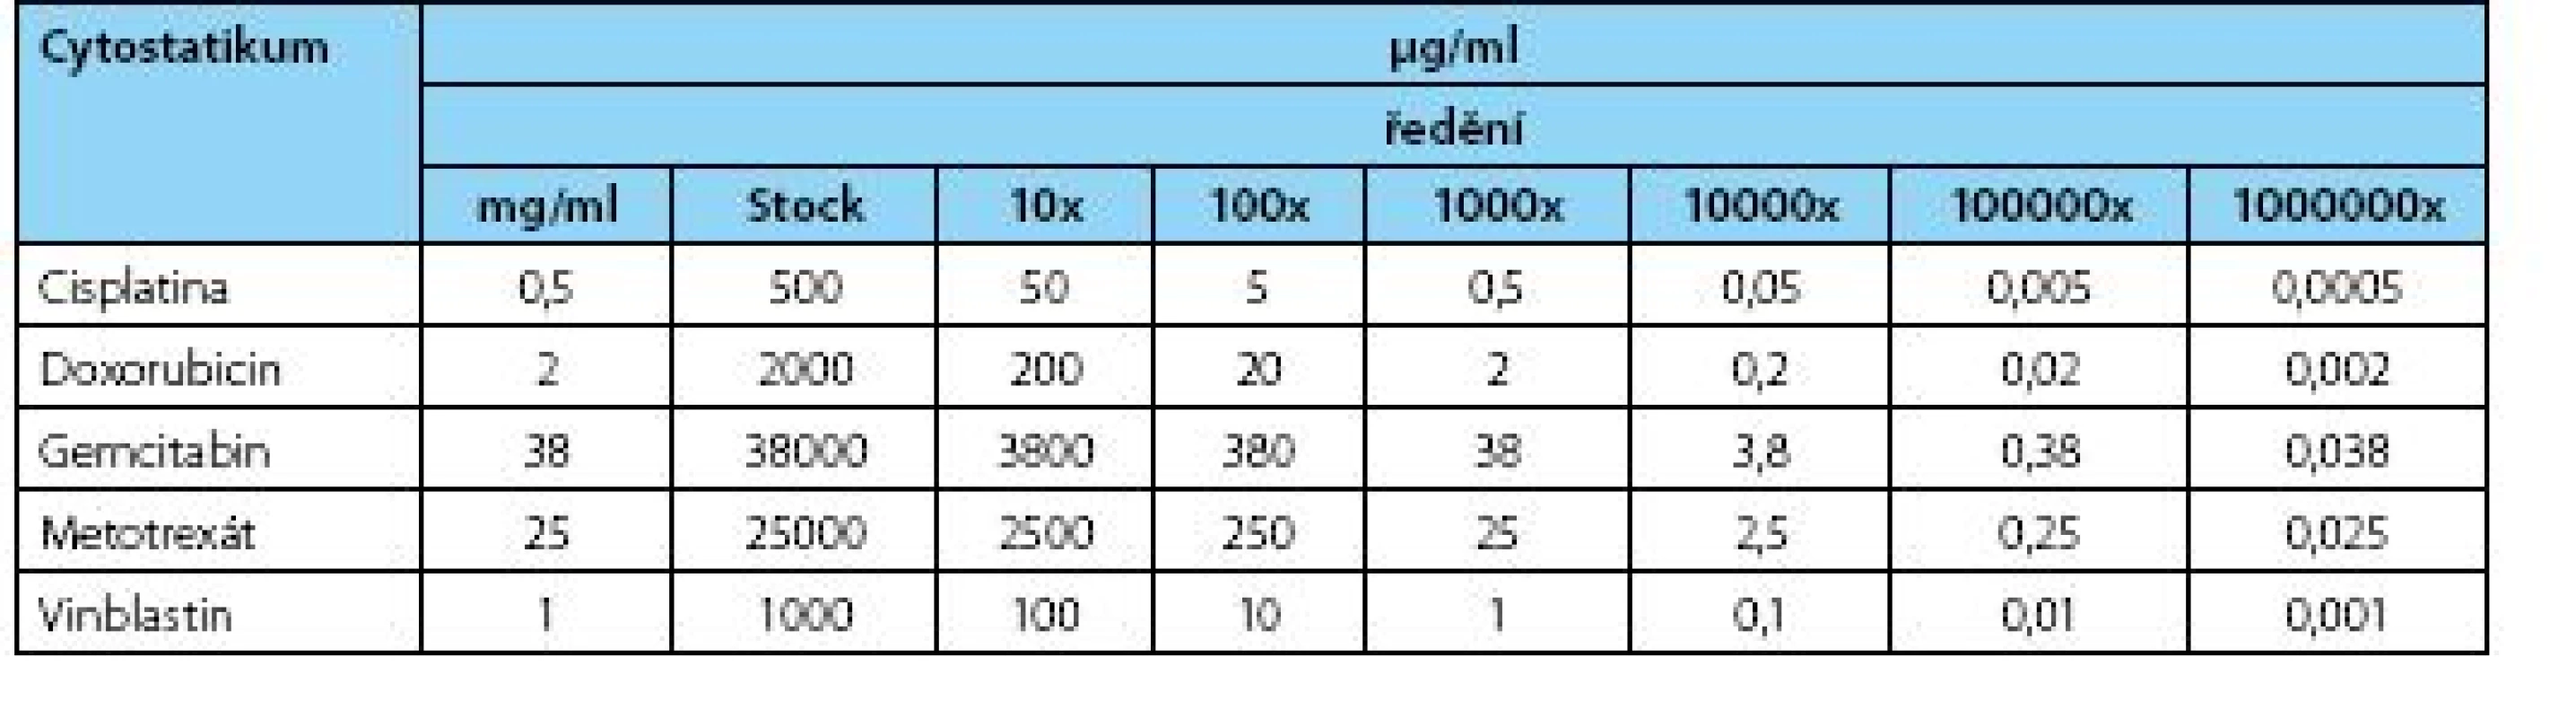 Výsledné koncentrace použitých cytostatik v jednotlivých ředěních použitých při analýze
Table 1. Final concentrations of cytostatics at variable dilutions used